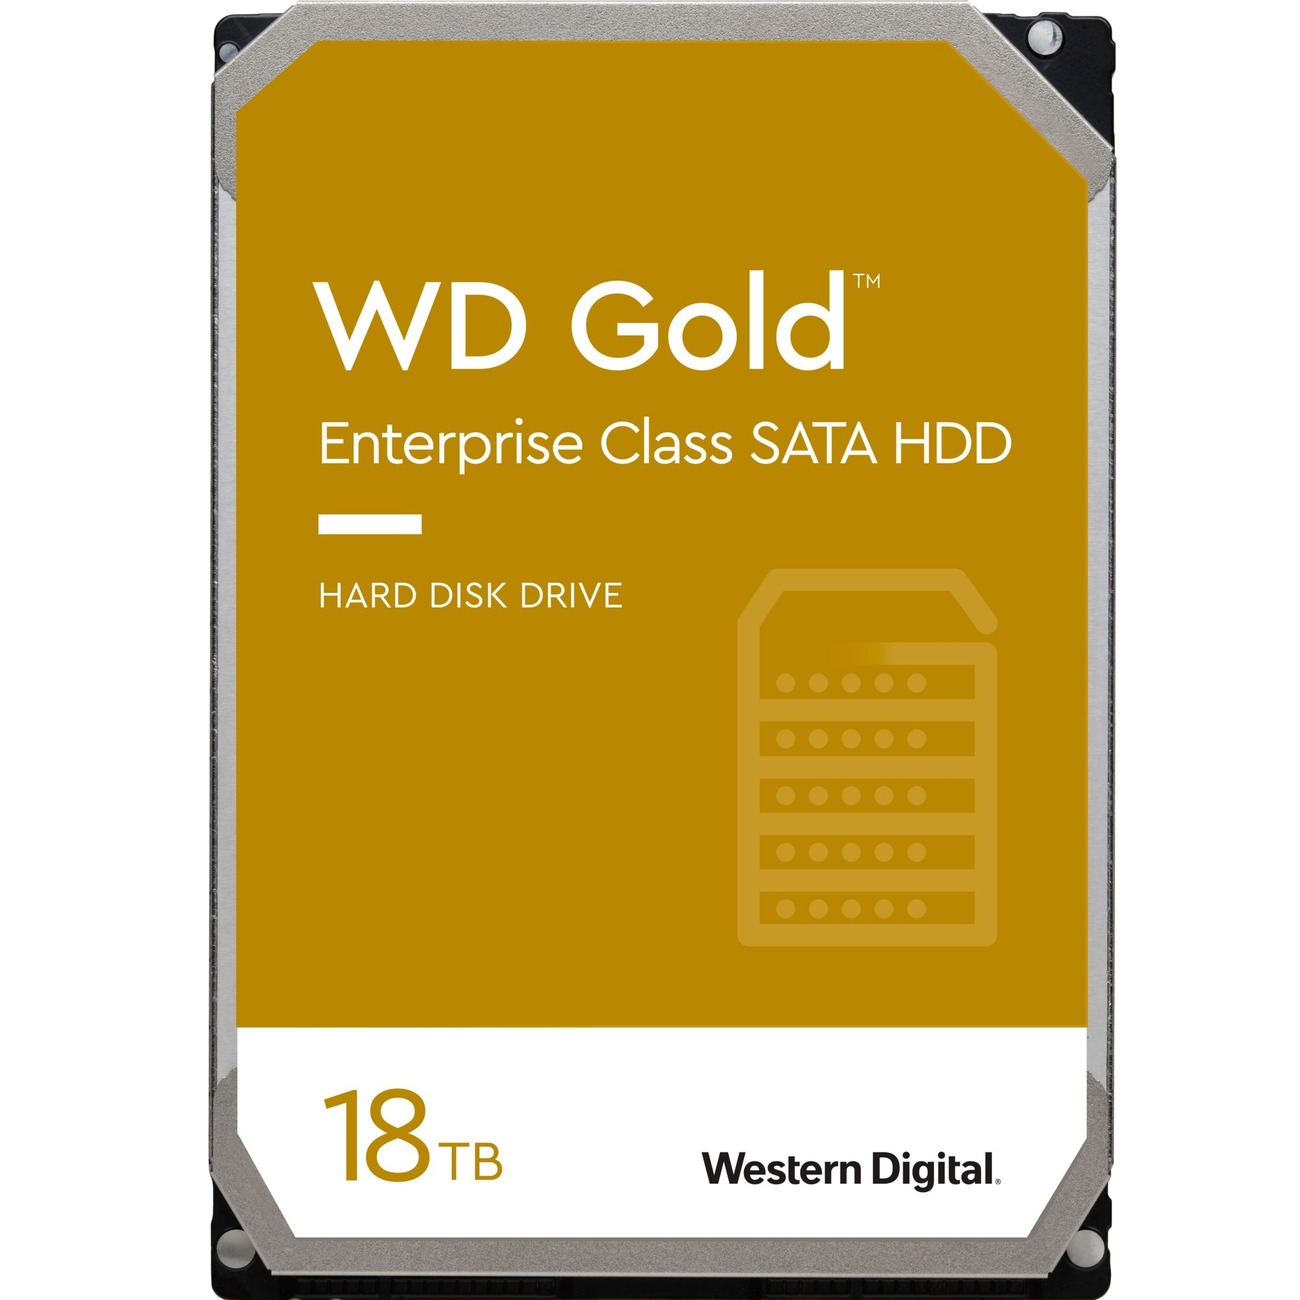 WESTERN DIGITAL HDD GOLD 18TB 3,5 SATA 7,2K CACHE 256MB